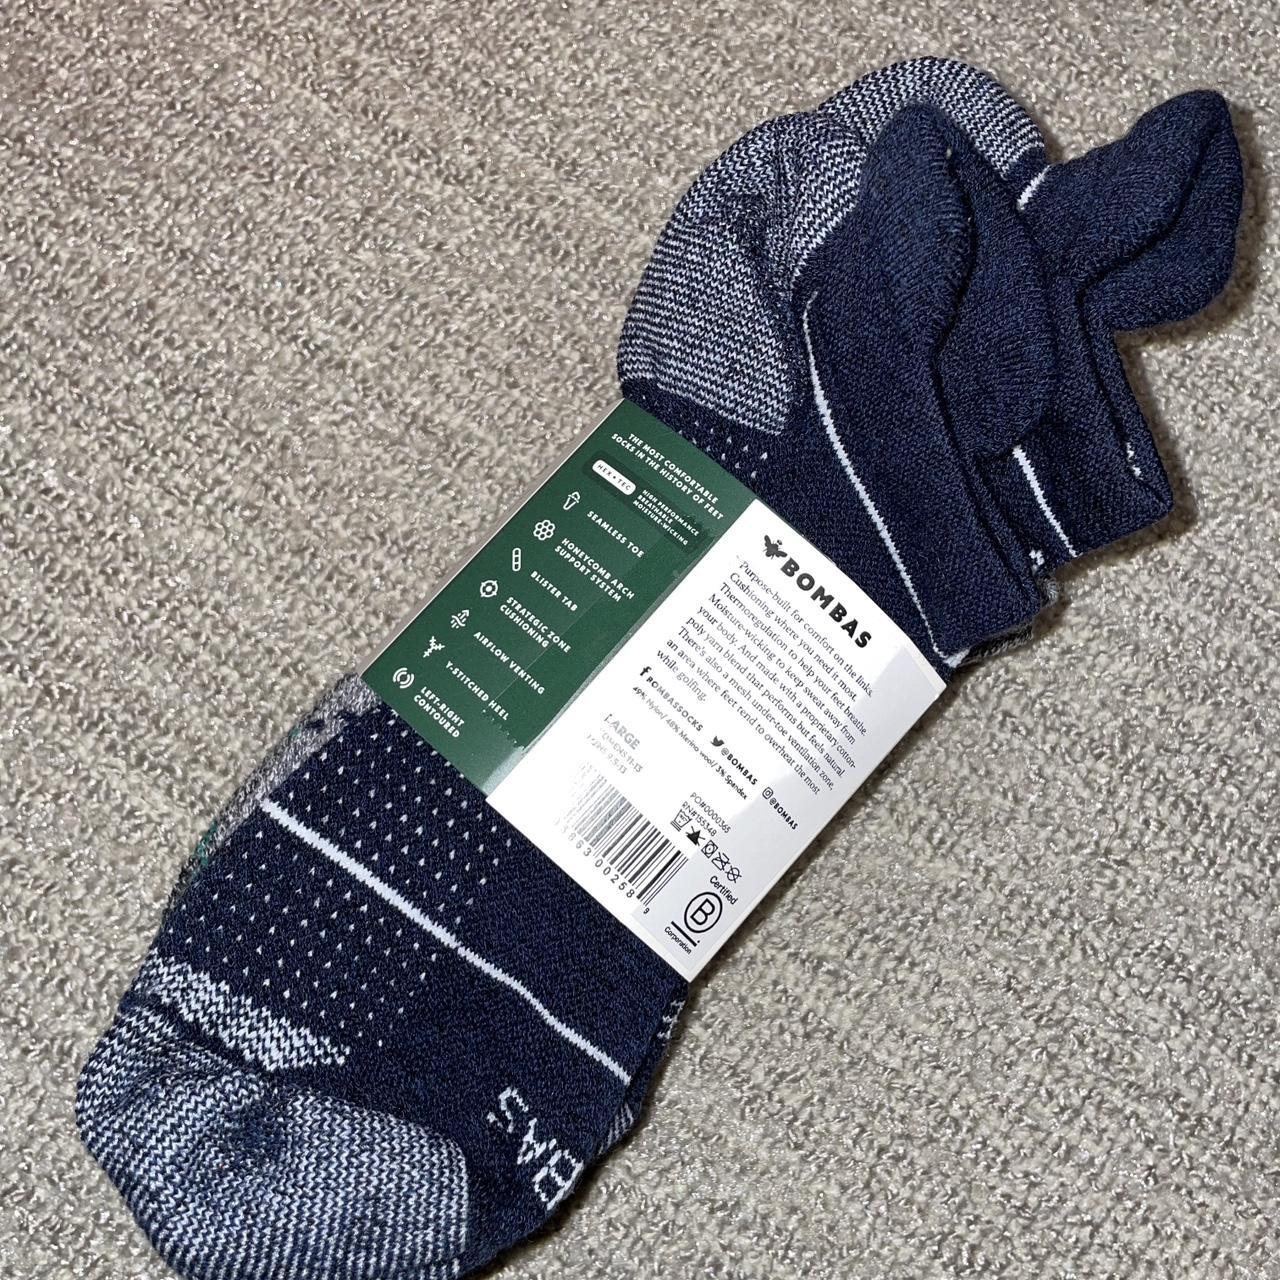 Bombas Men's Grey and Navy Socks (2)